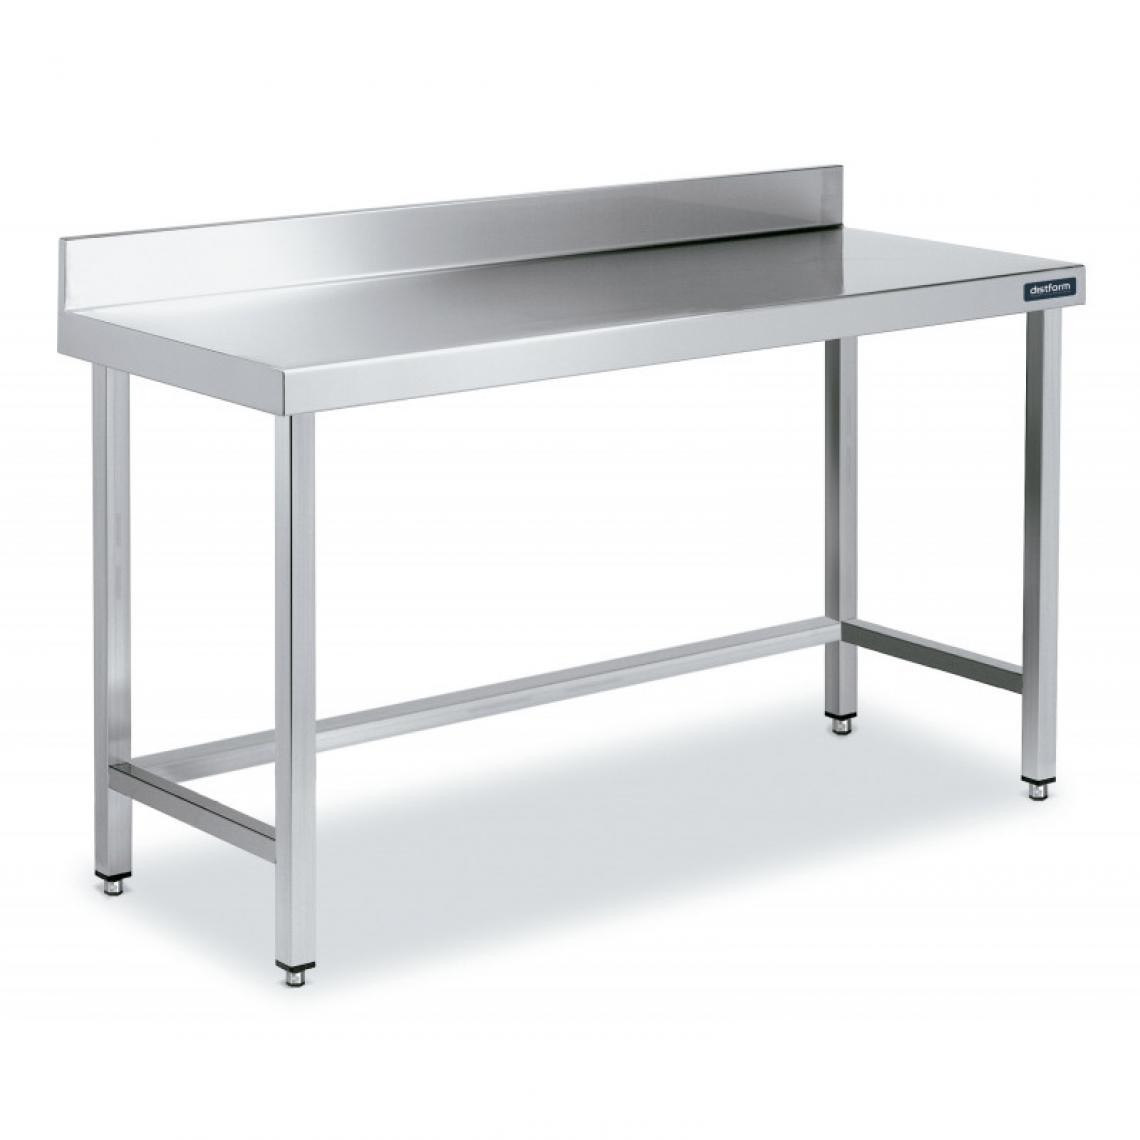 DISTFORM - Table Adossée en Inox avec Renforts Profondeur 600 mm - Distform - Acier inoxydable1200x600 - Tables à manger